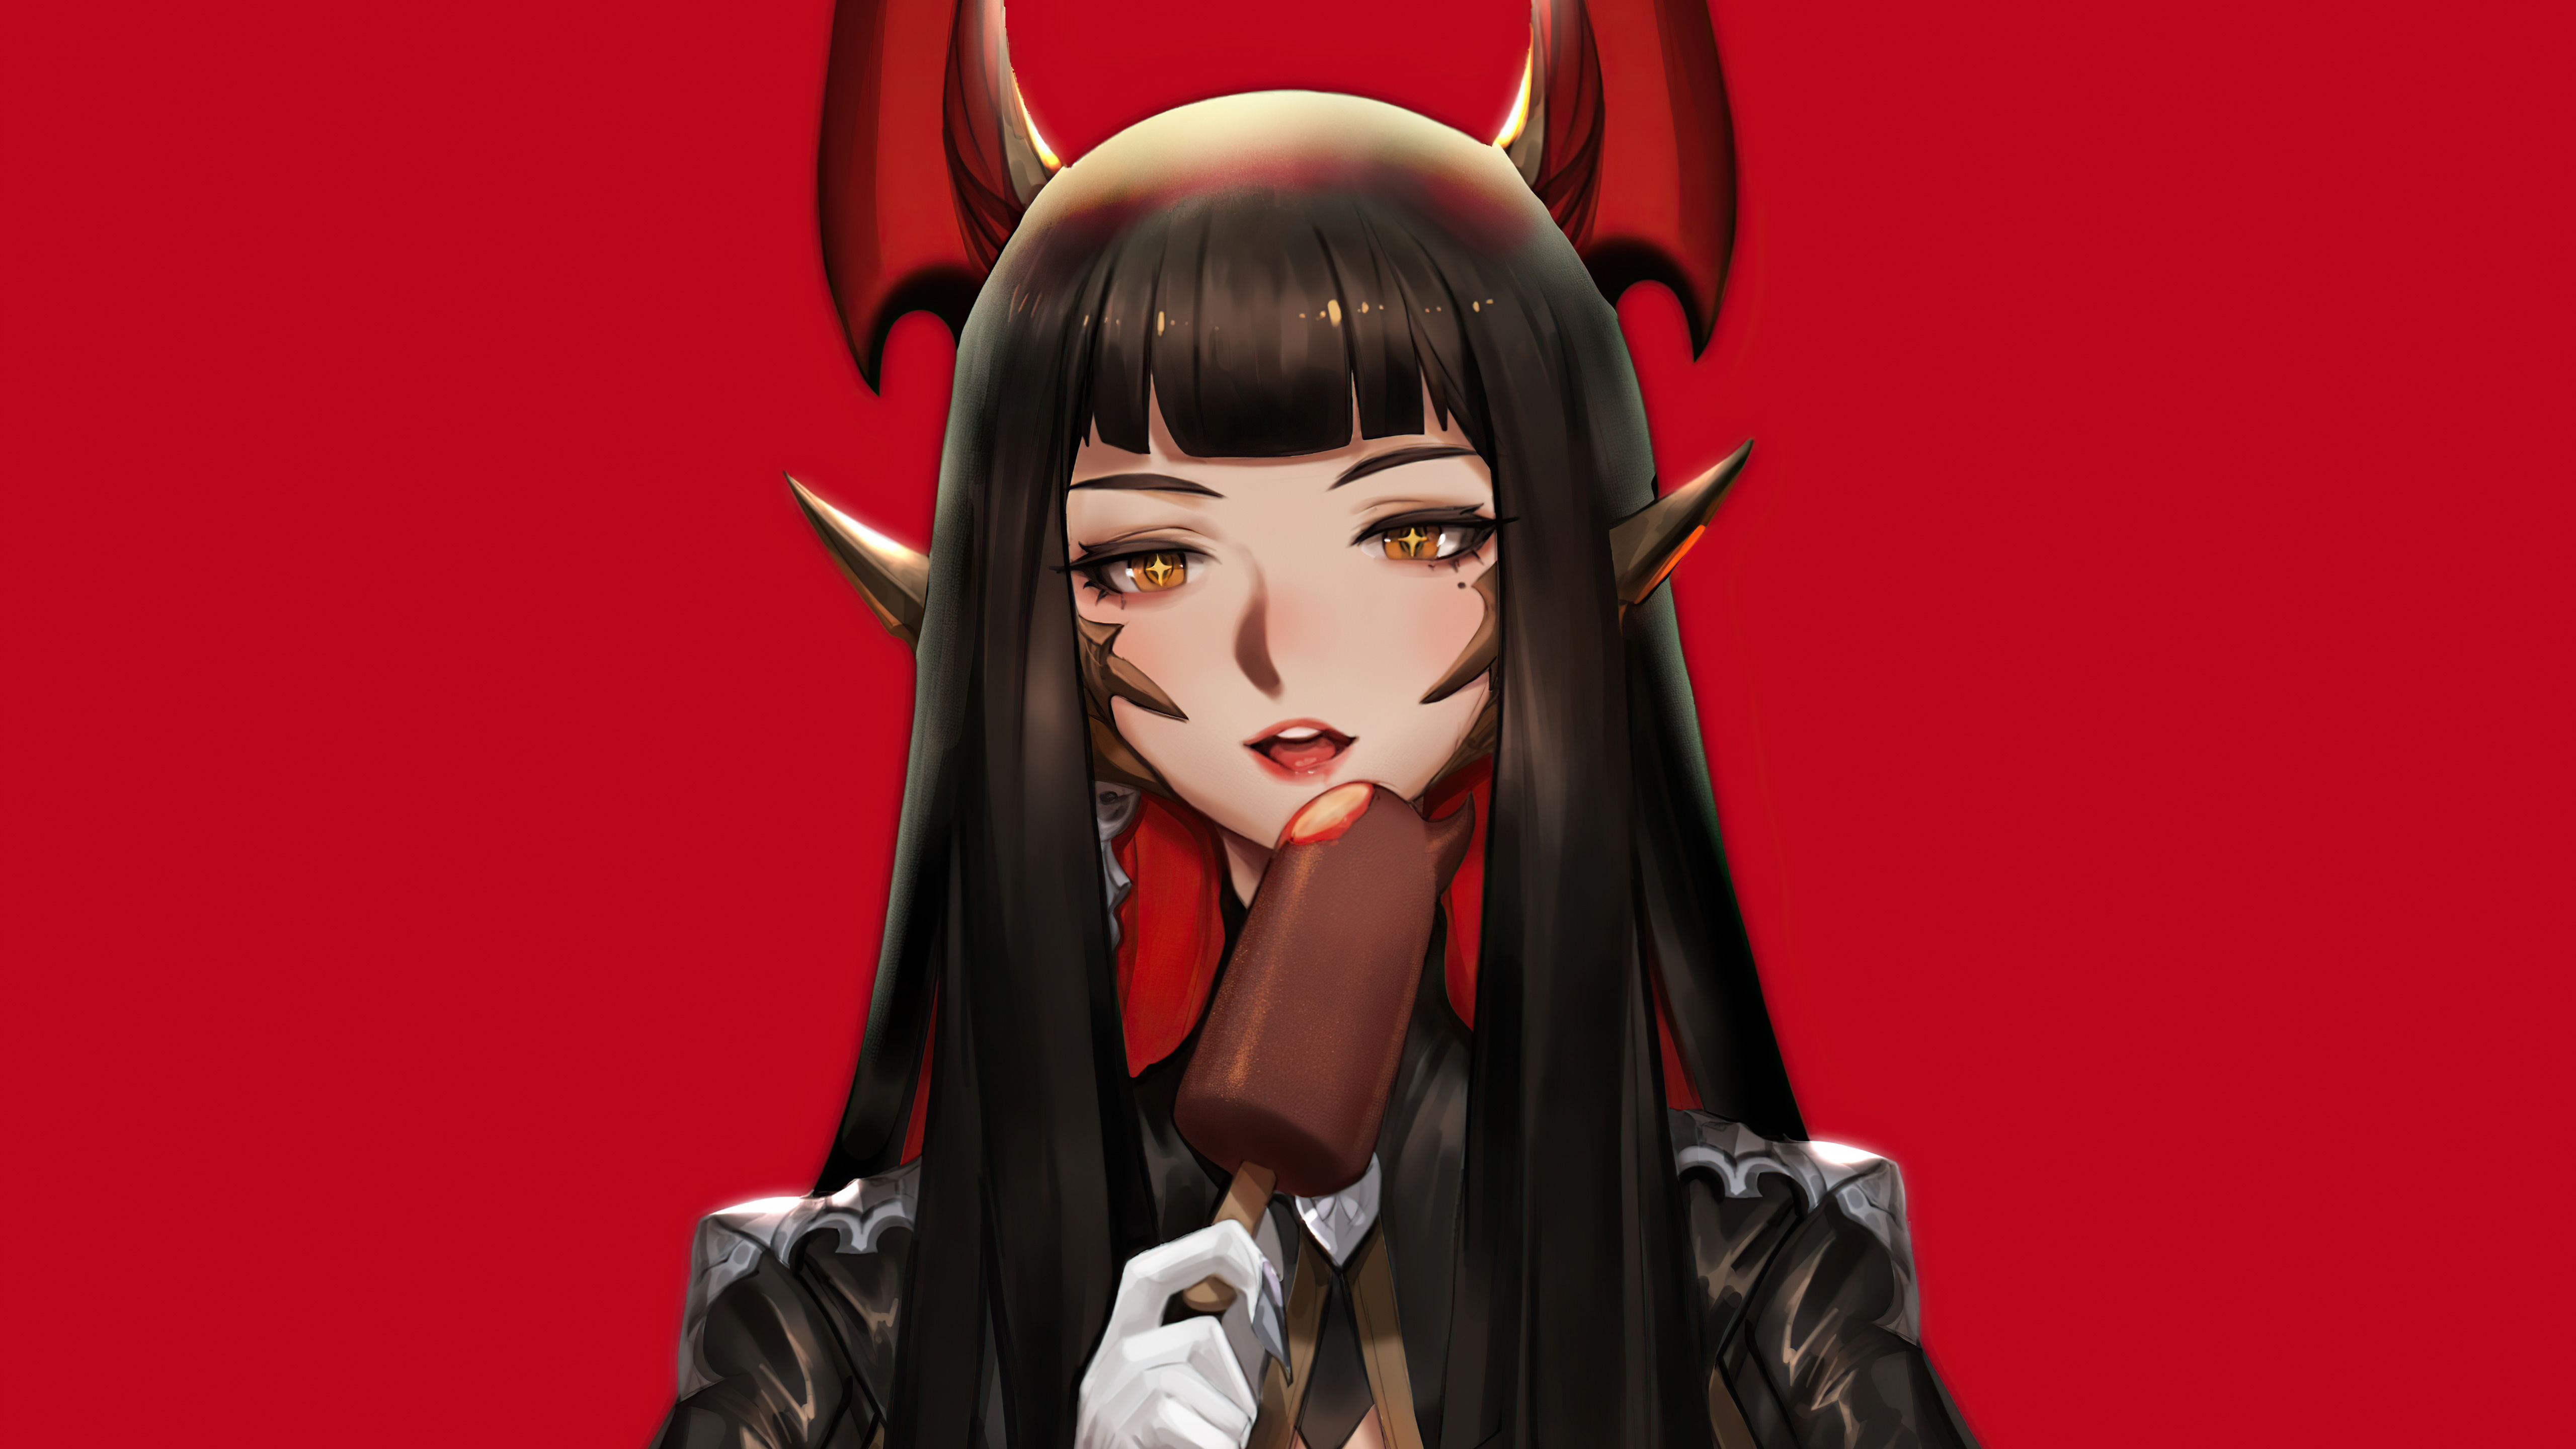 Cute devil girl HD wallpapers | Pxfuel